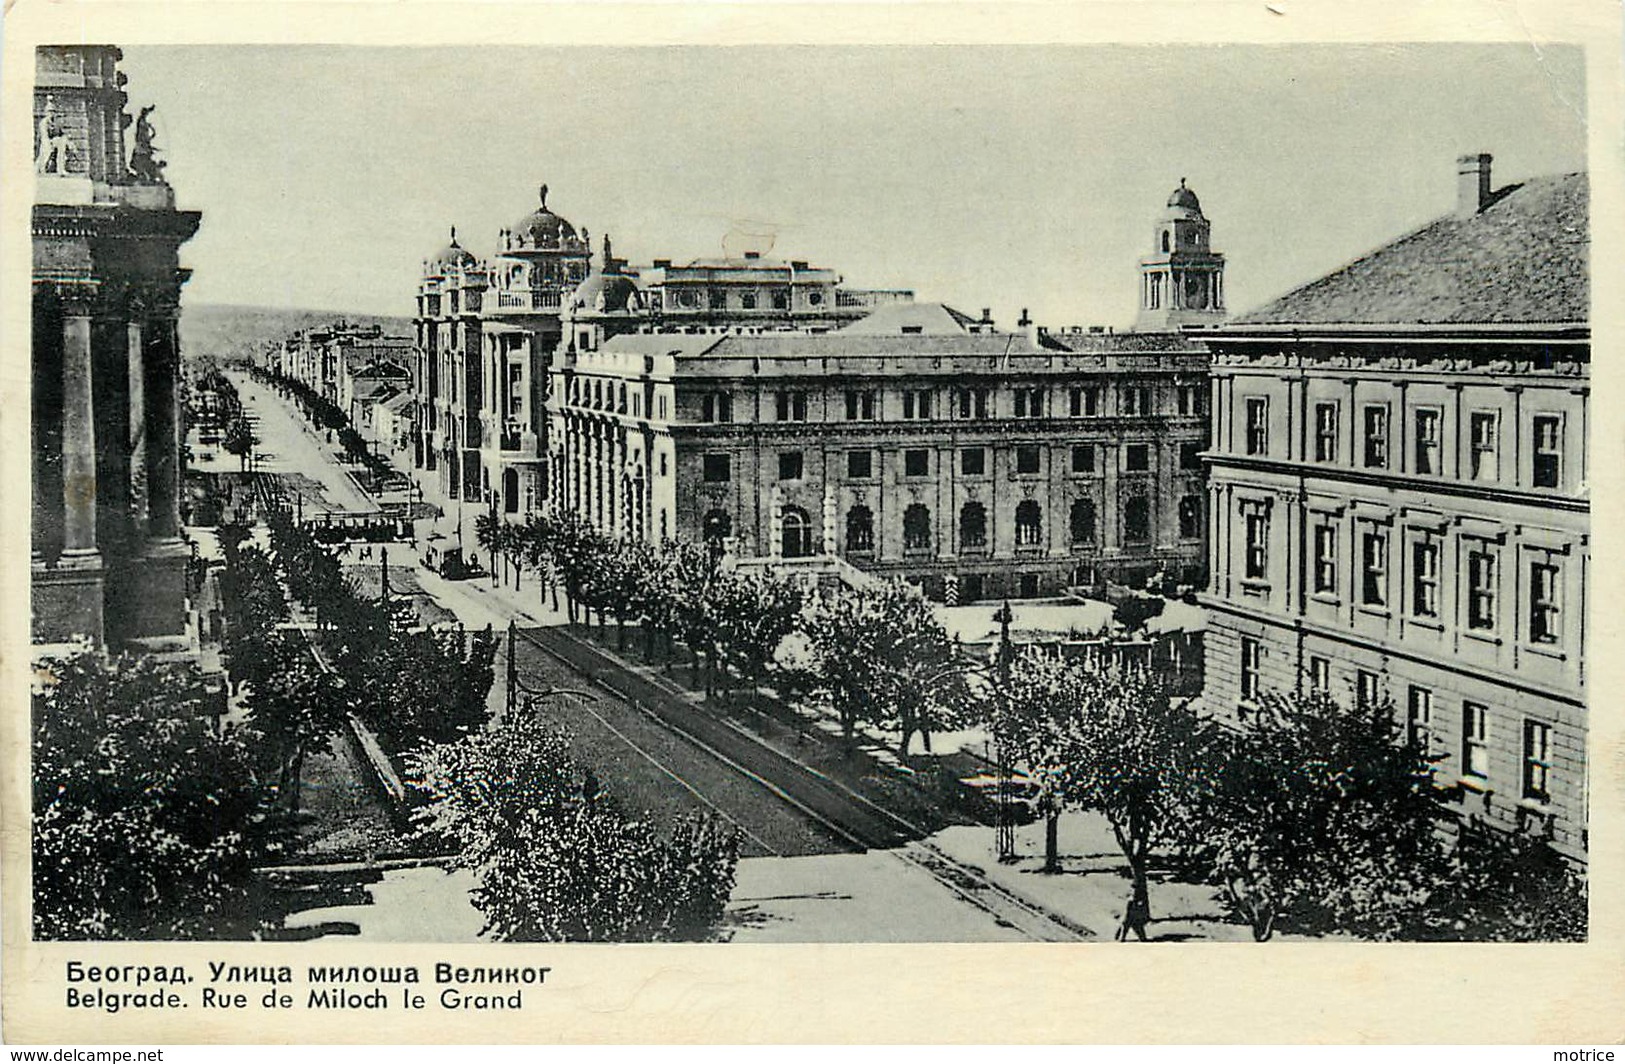 BELGRADE - lot de sept cartes diverses de la ville (1938).